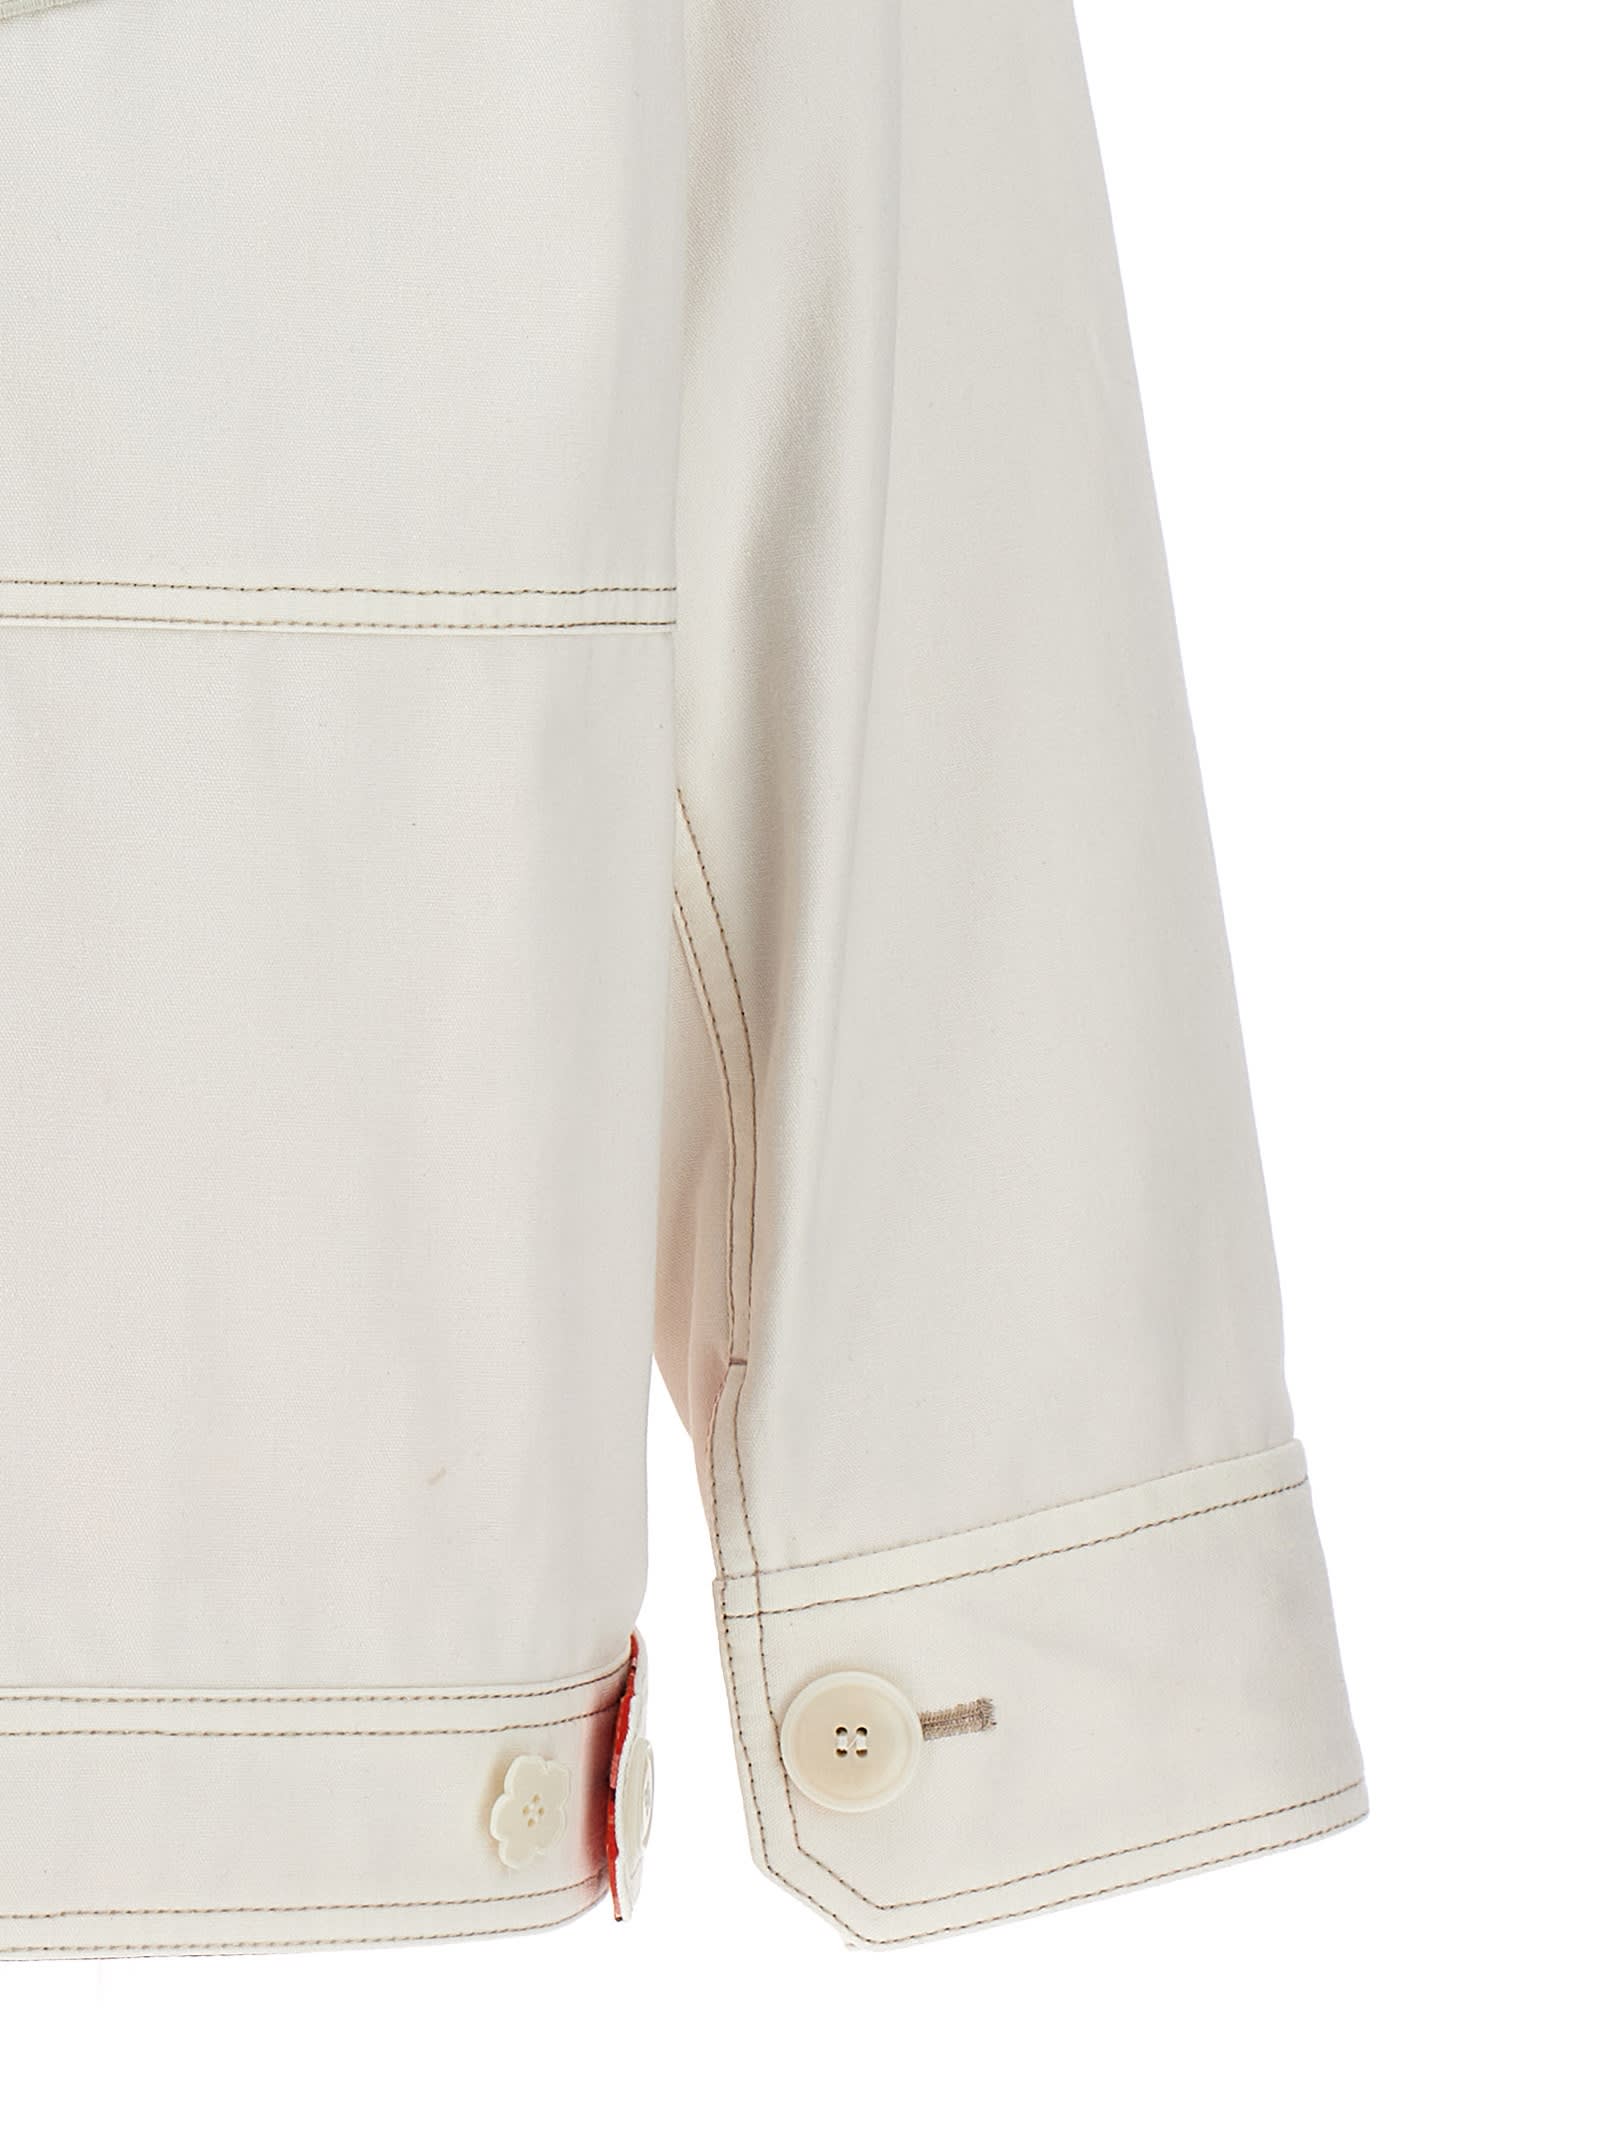 Shop Kenzo Workwear Jacket In Blanc Casse